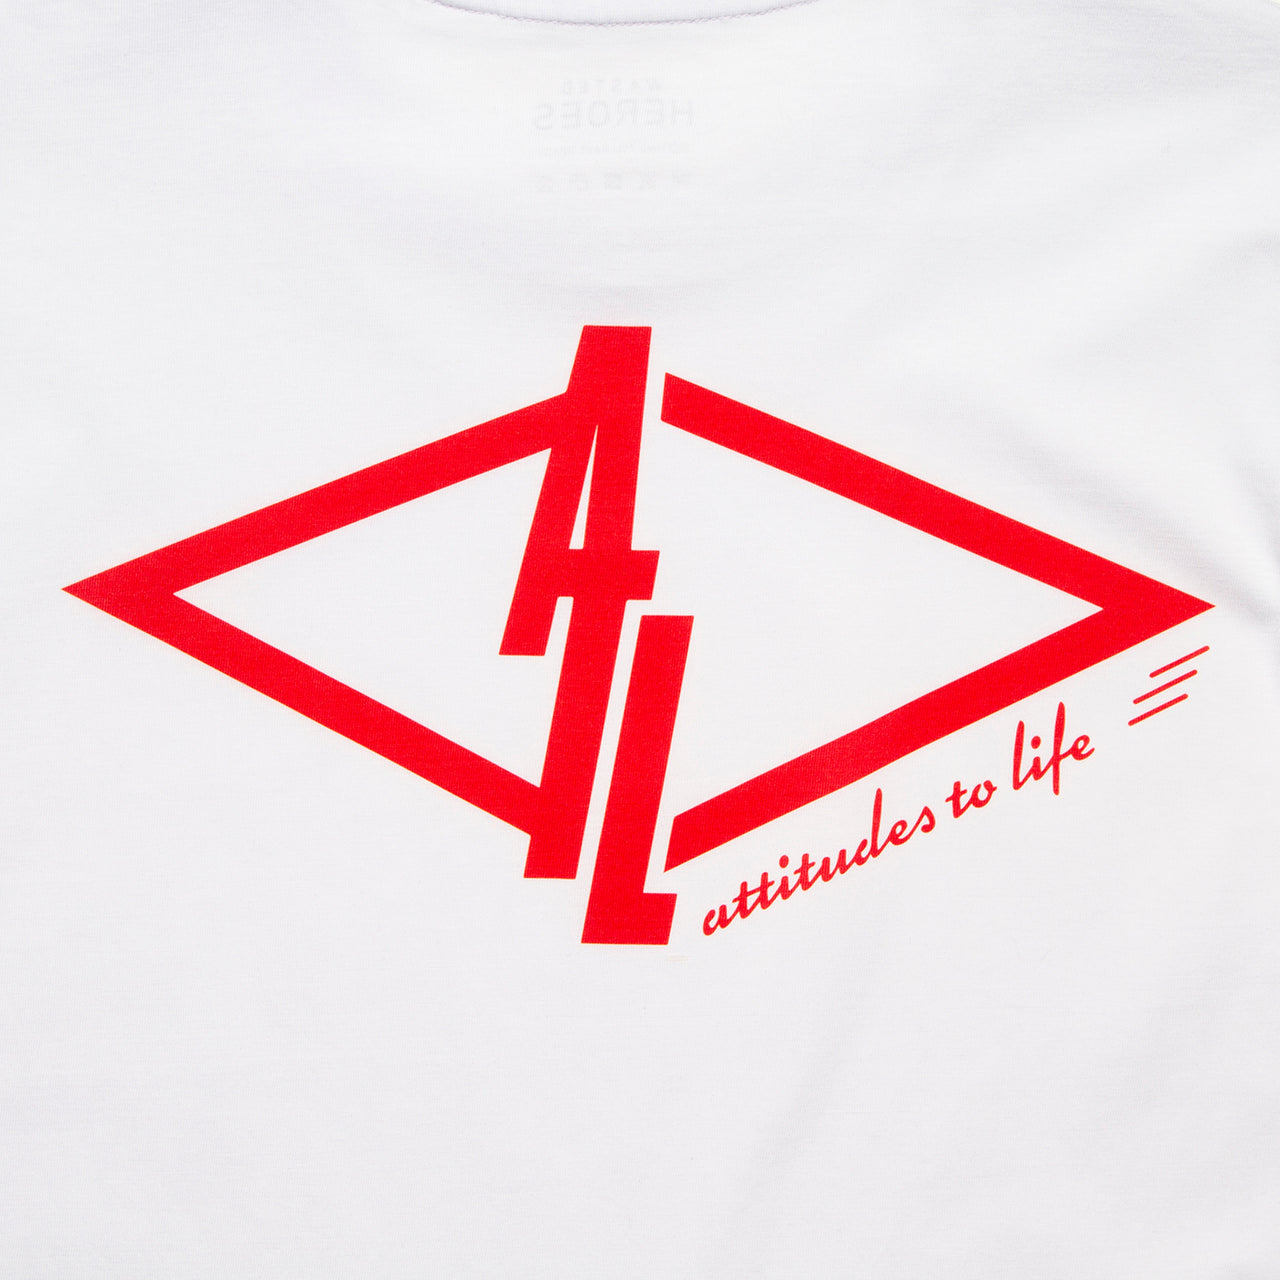 Matrefakt Attitudes To Life 007 Back Print - Tshirt - White